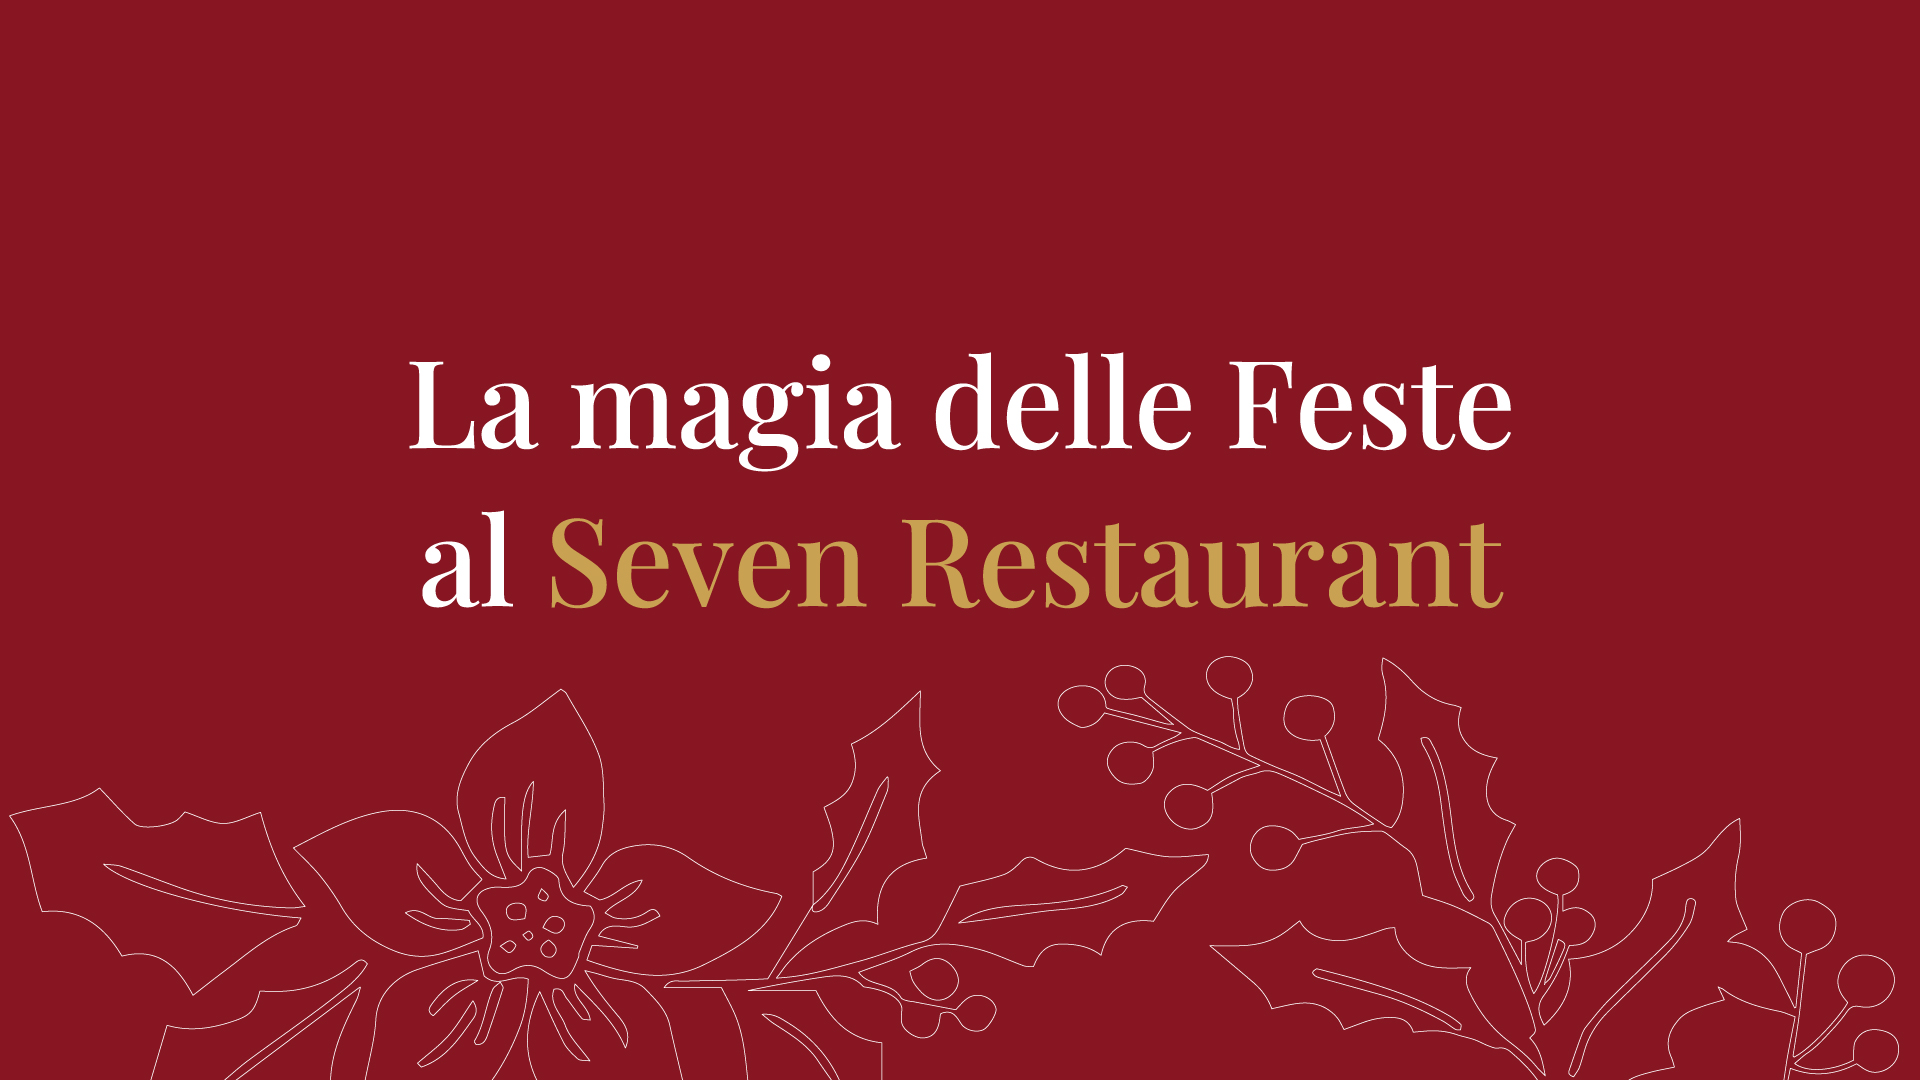 La magia delle feste al Seven Restaurant